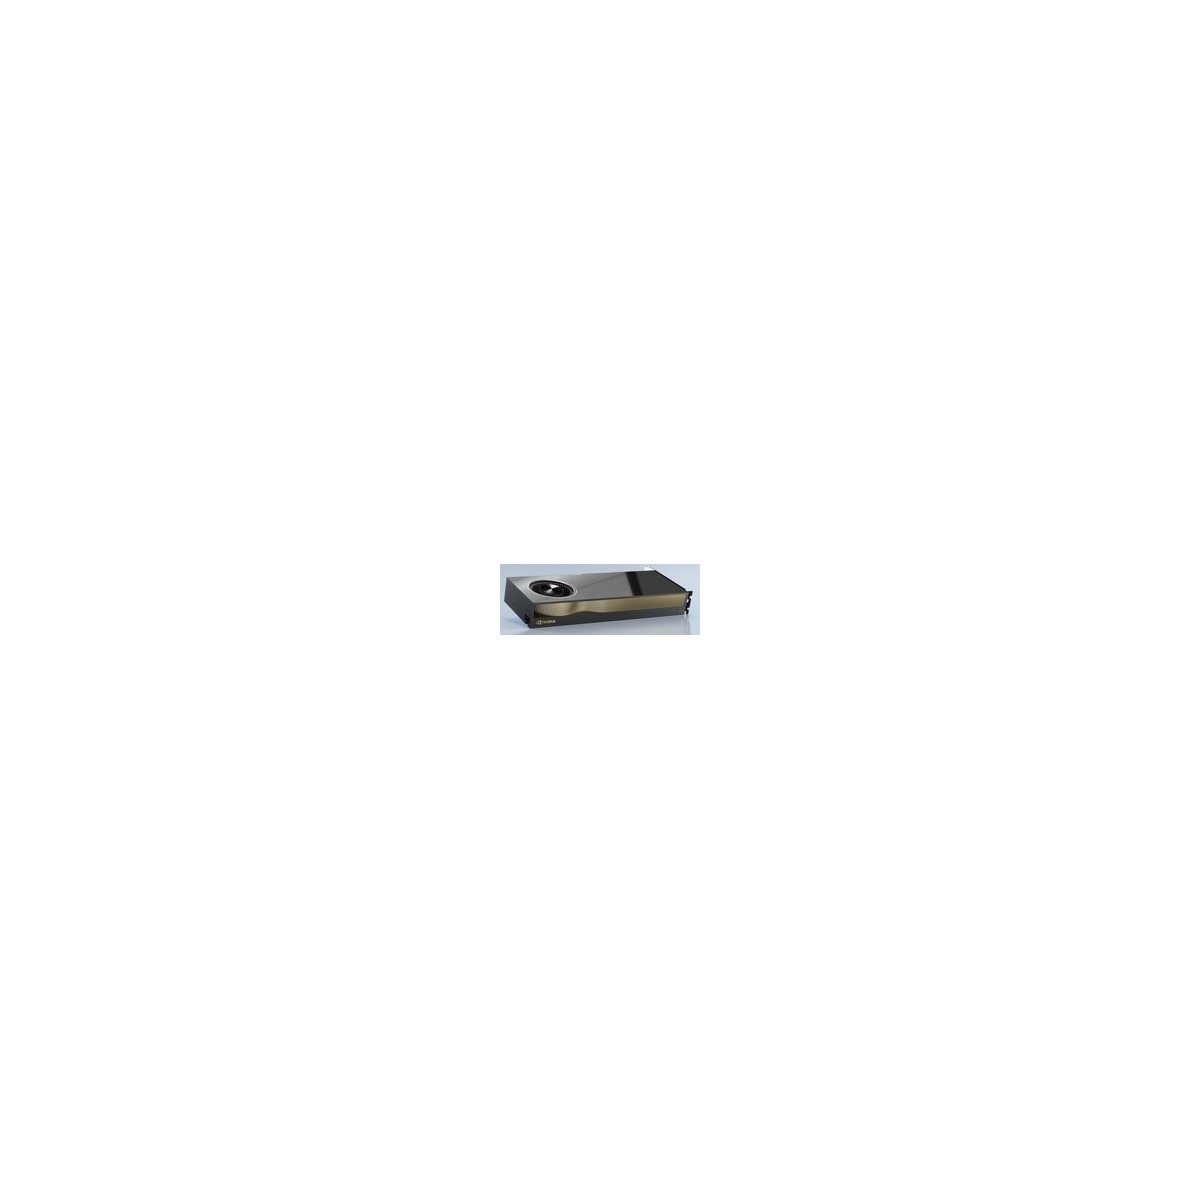 NVIDIA 900-5G132-2500-000 - RTX A5000 - 24 GB - GDDR6 - 384 bit - 7680 x 4320 pixels - PCI Express x16 4.0